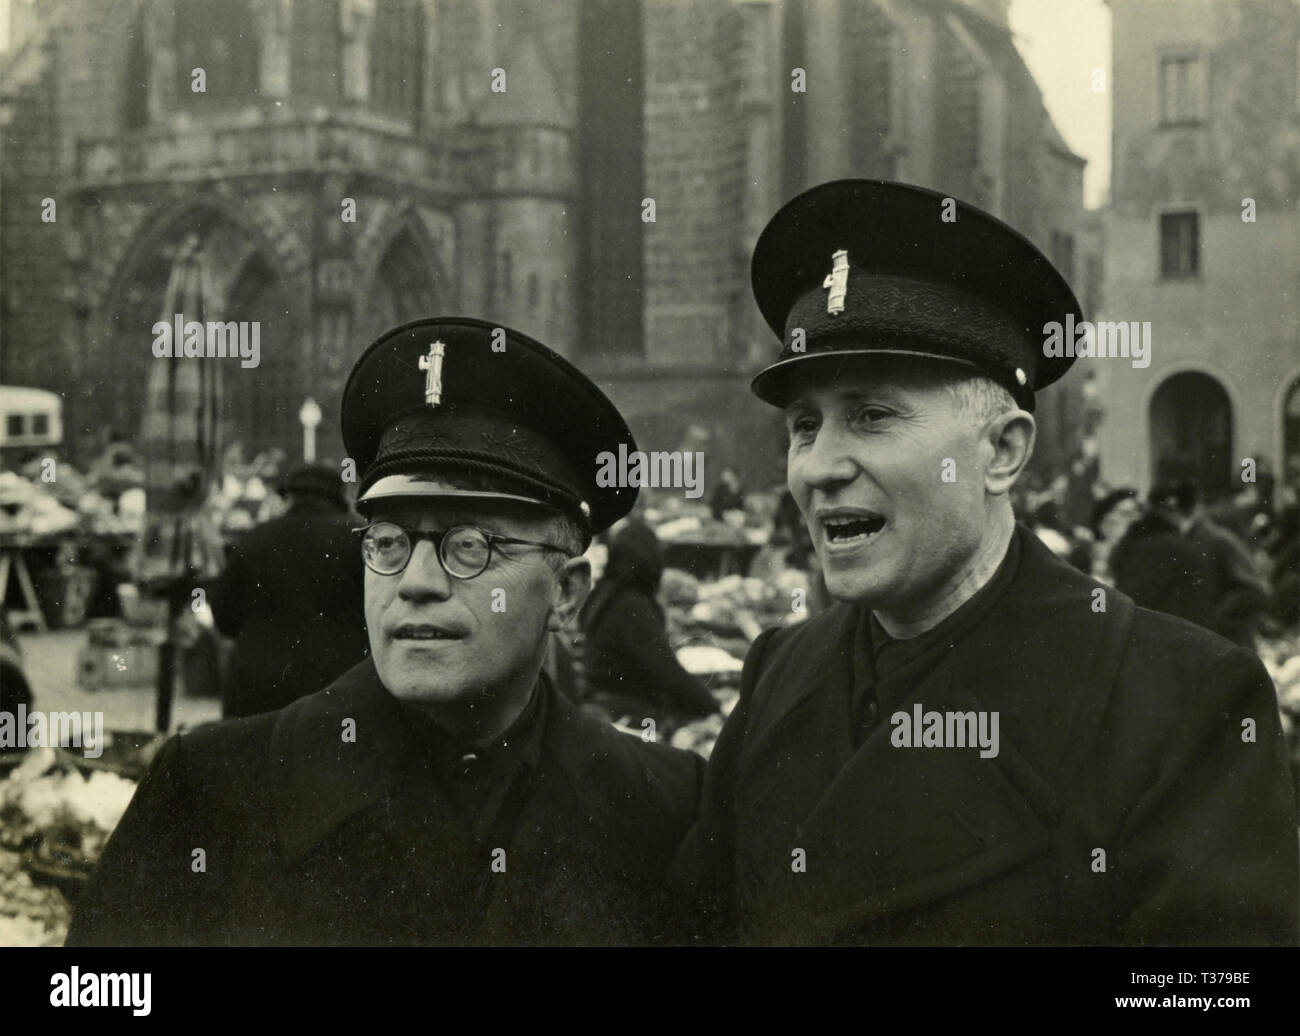 Zwei Mann mit faschistischen Uniformen, Italien 1930 Stockfoto